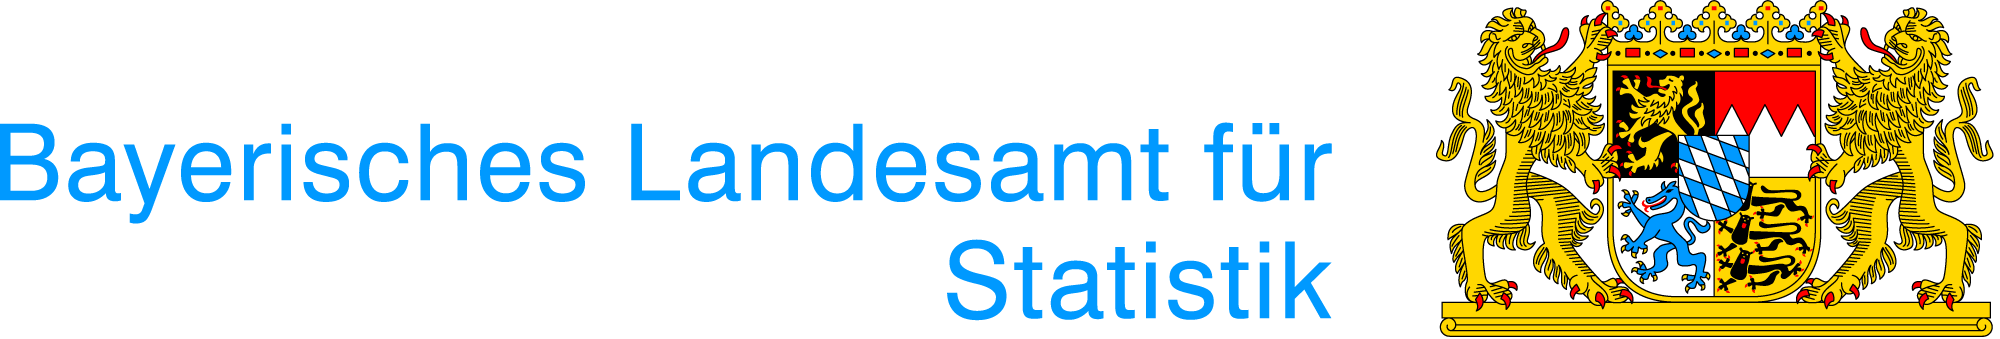  Logo Bayerisches Landesamt für Statistik 